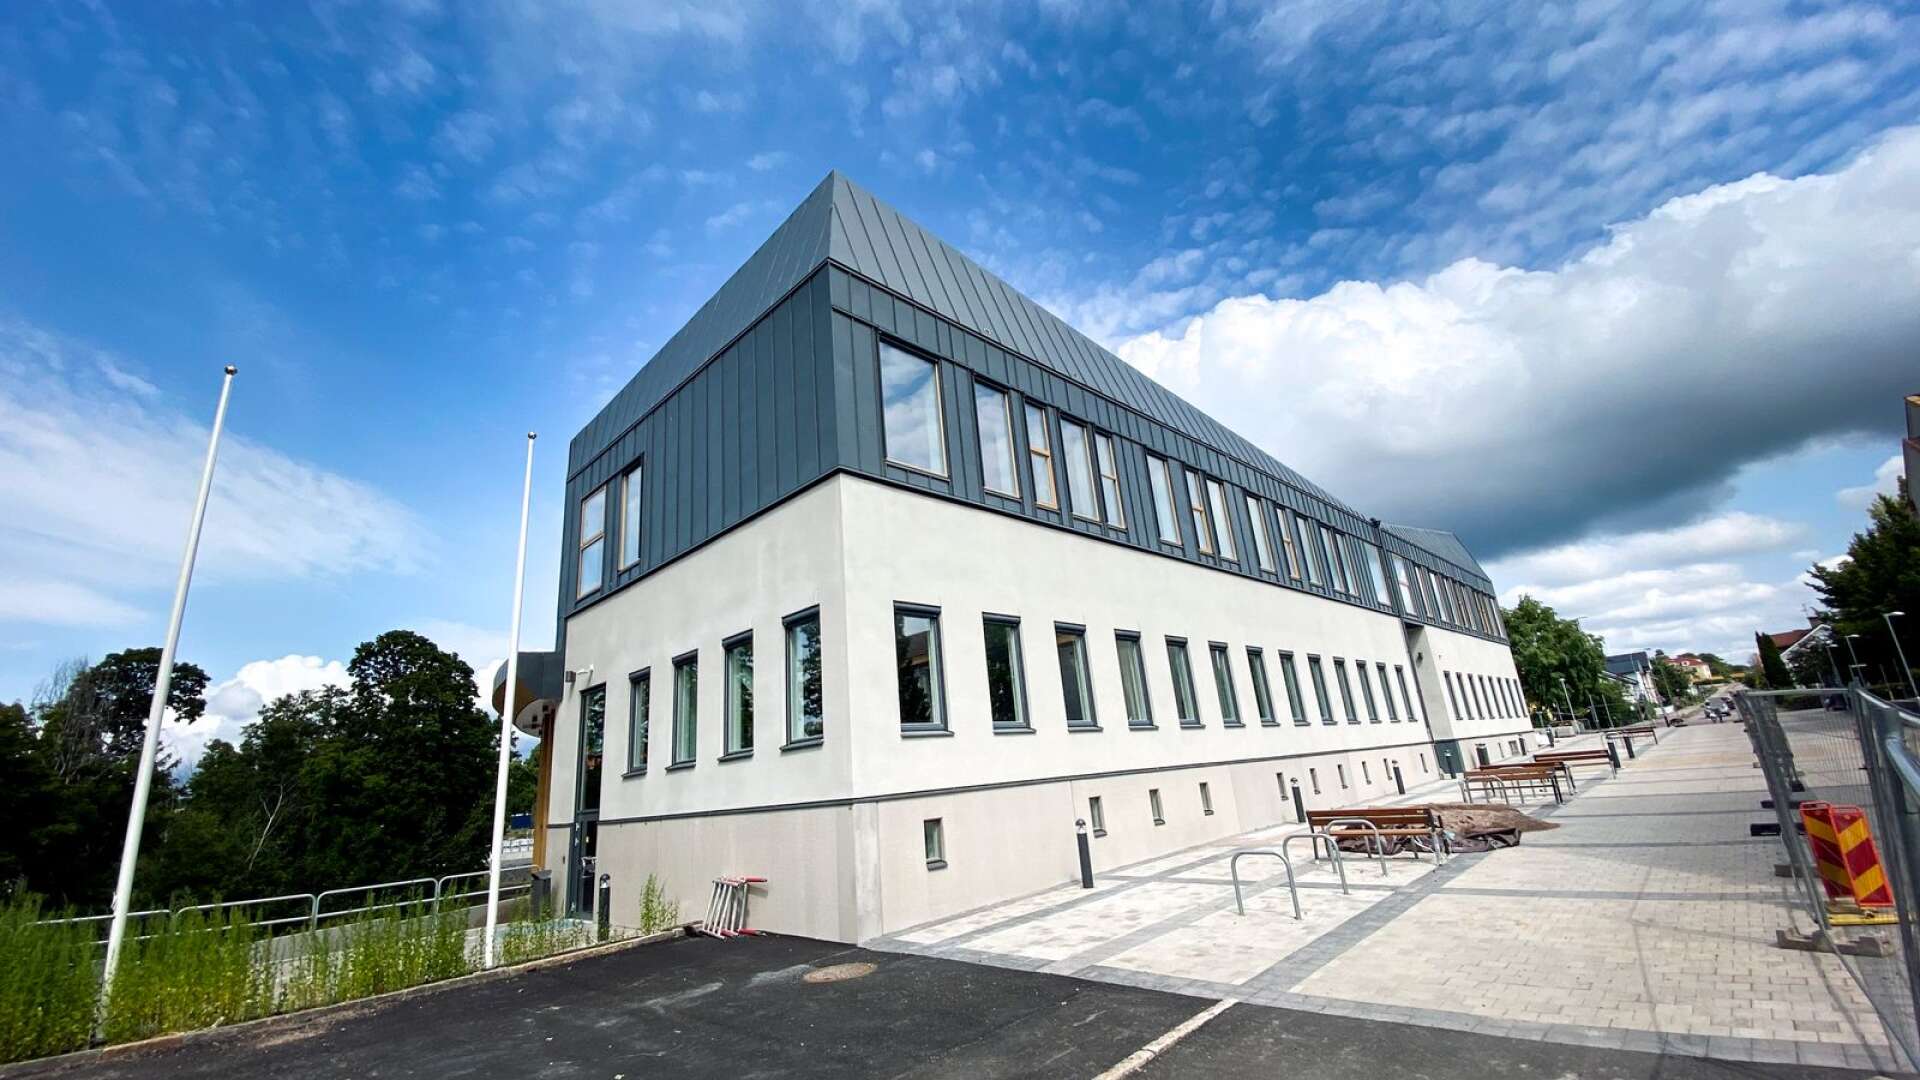 Bygget av KTIC, Kristinehamns teknik- och innovationscenter, har varit problemomgärdat.